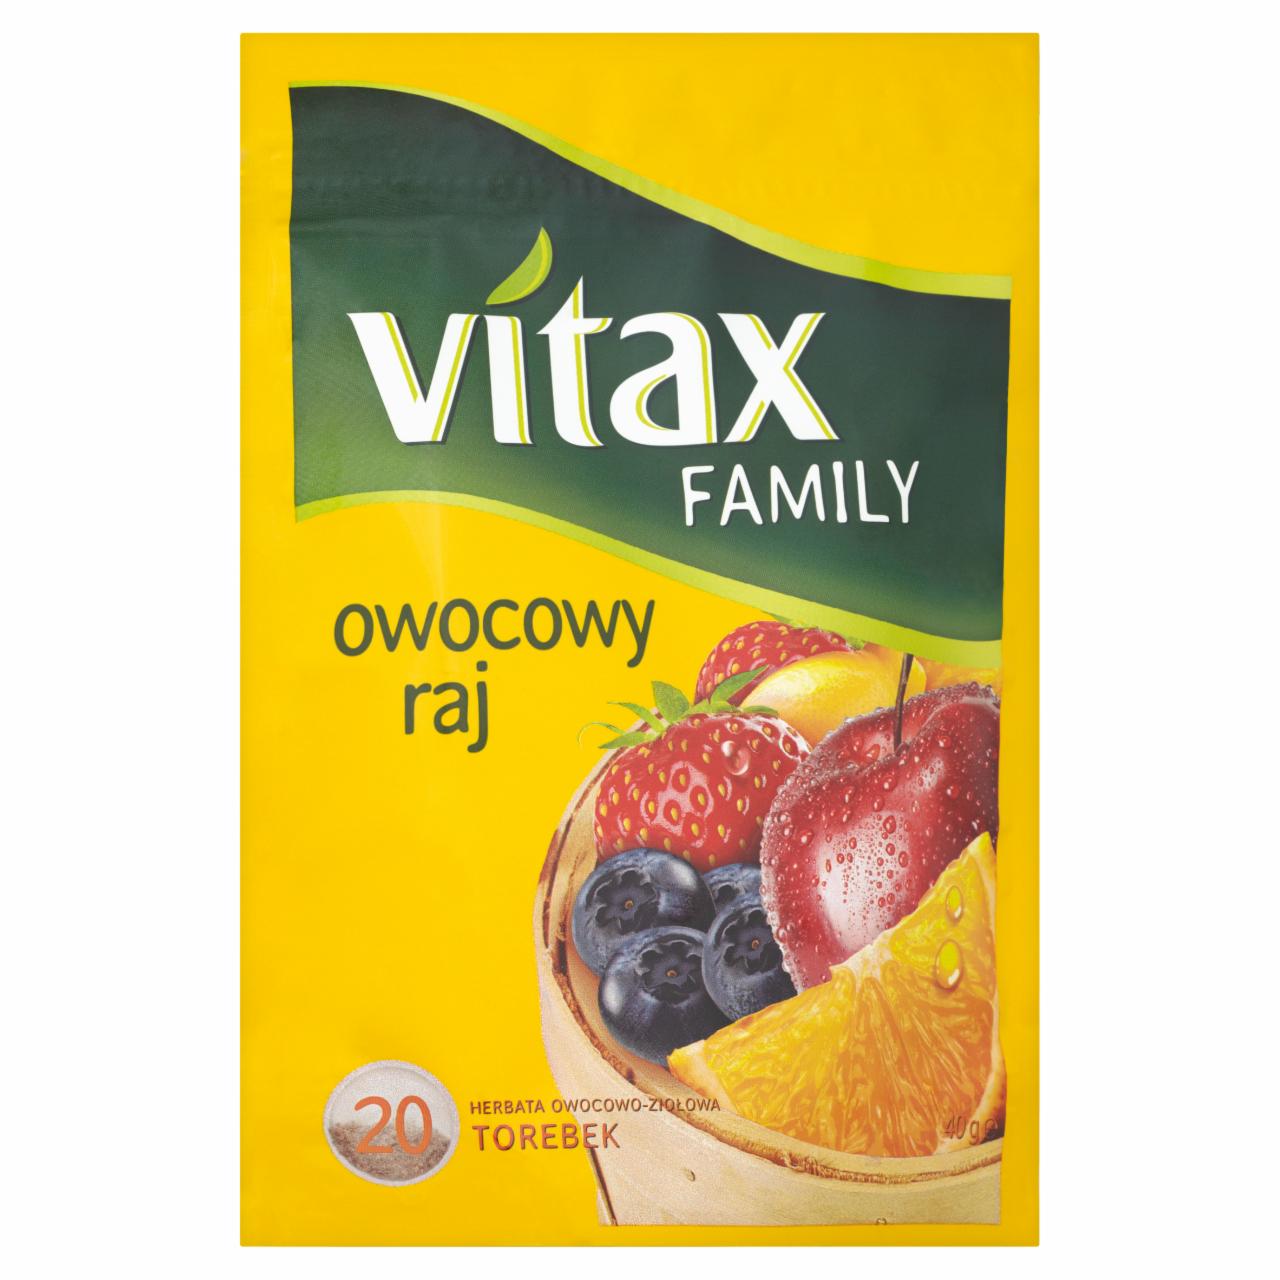 Zdjęcia - Vitax Family owocowy raj Herbata owocowo-ziołowa 40 g (20 torebek)